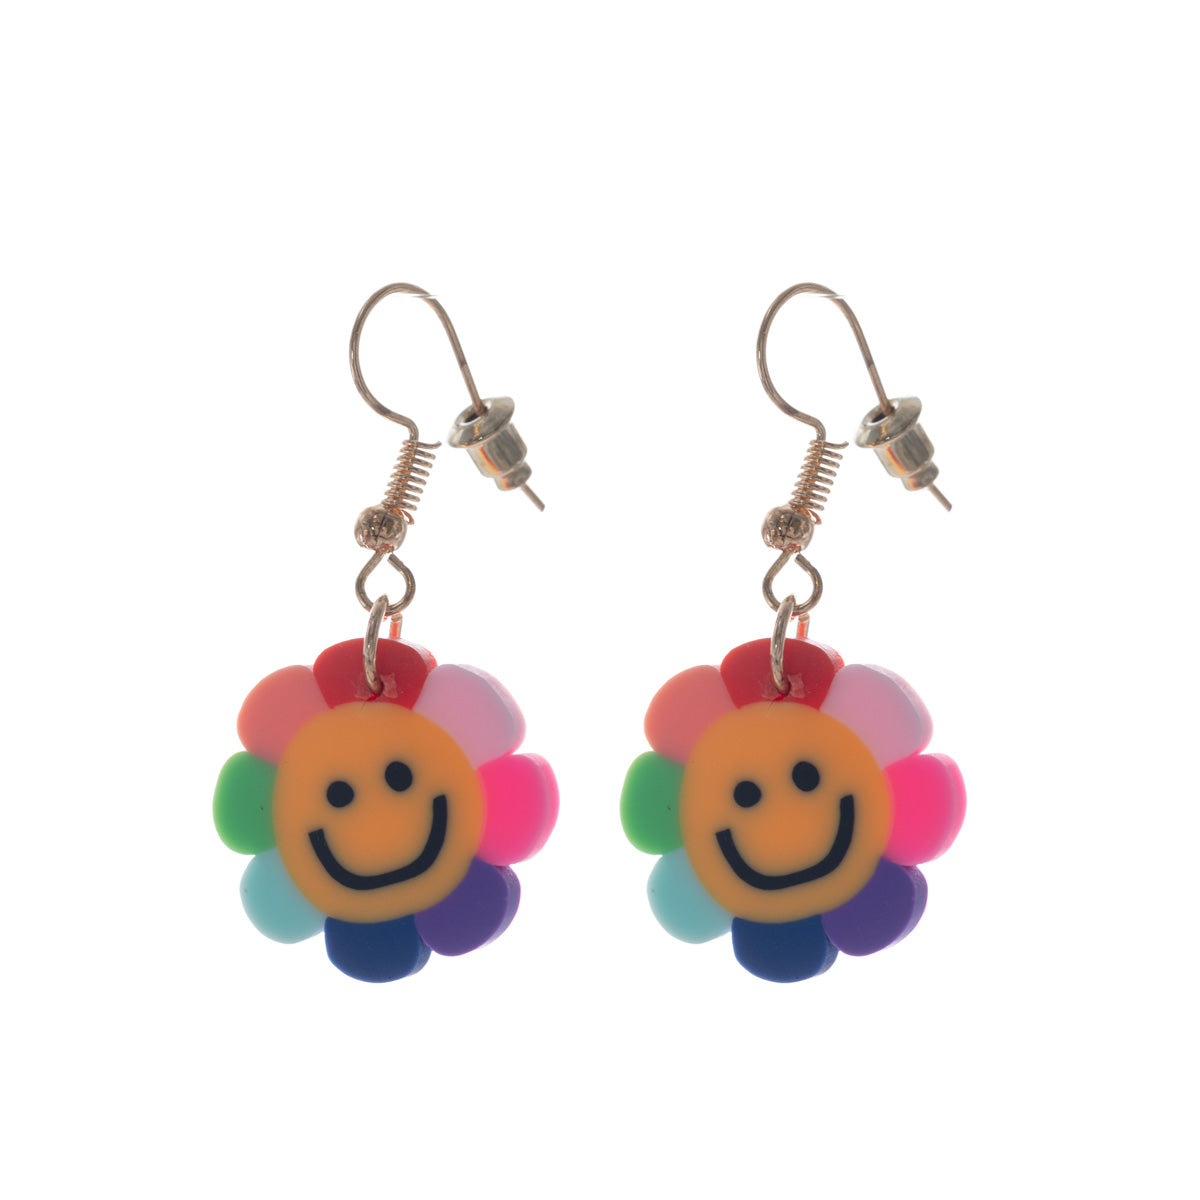 Smile earrings